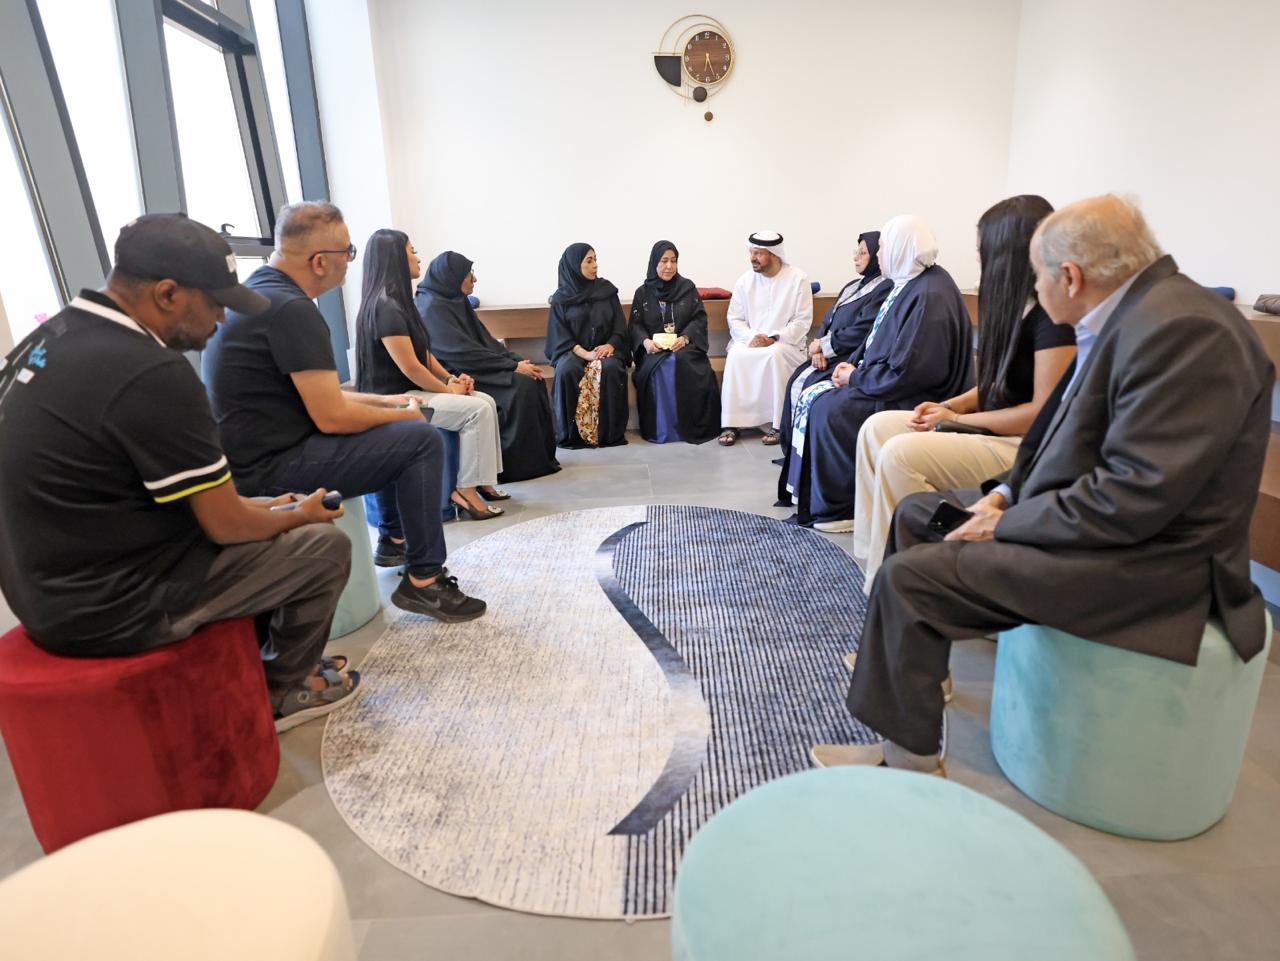 جمعية الصحفيين الإماراتية تنظم جلسة شهرية بعنوان "جمالية الخط العربي"